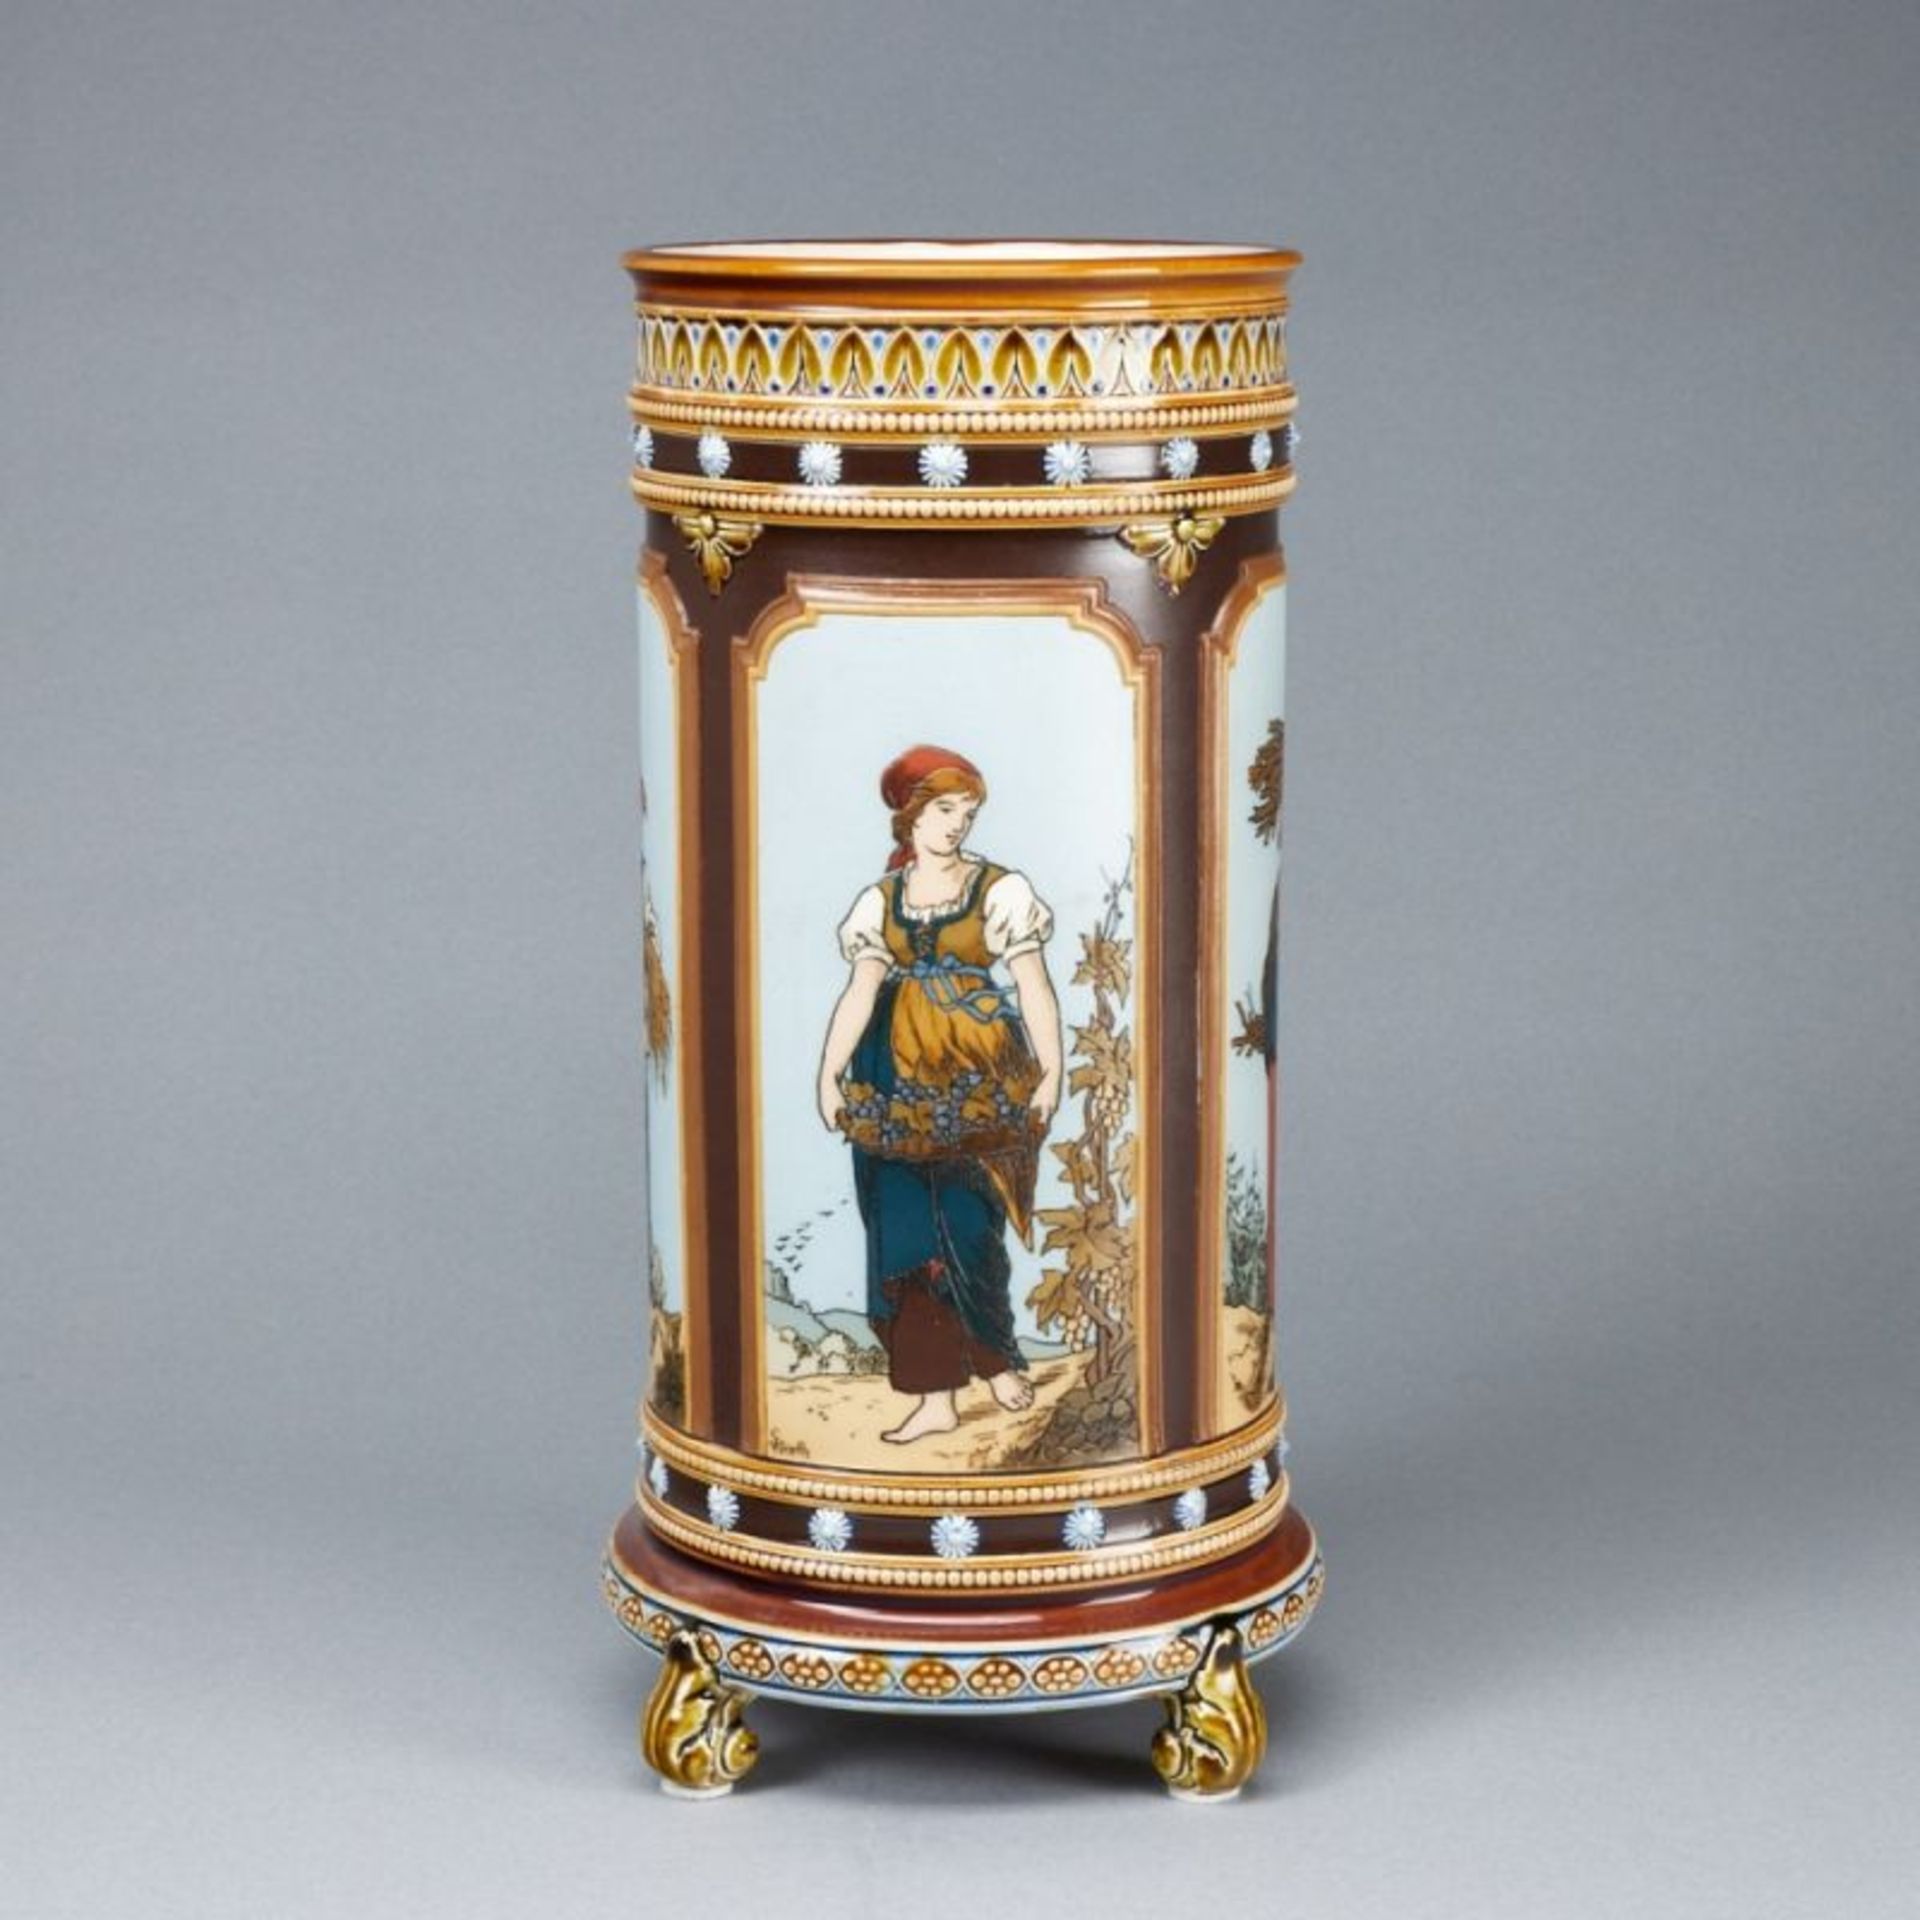 Jugendstil Vase - Vier Jahreszeiten. Villeroy & Boch, Mettlach um 1885. - Bild 3 aus 4